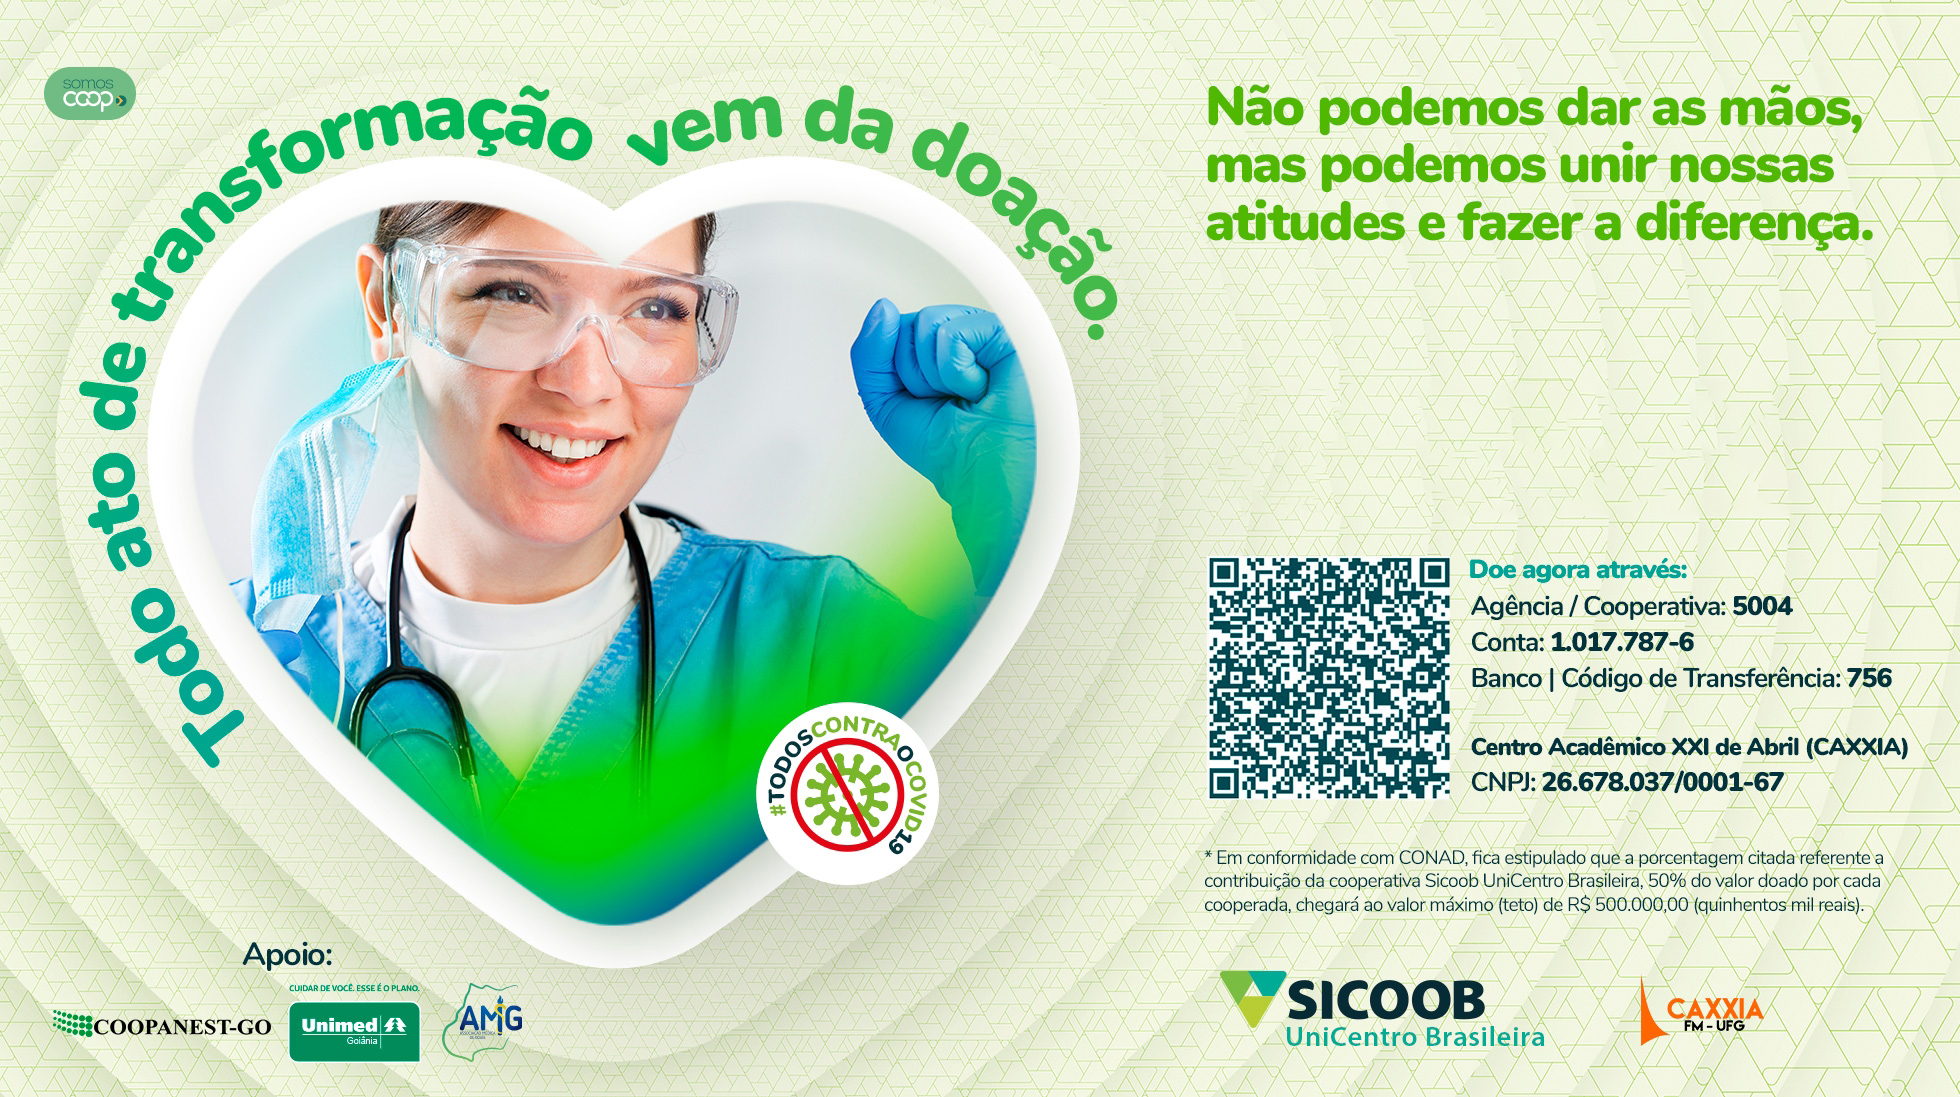 No momento você está vendo Sicoob UniCentro Brasileira lança campanha para doar 78 leitos de UTI para o HCGO